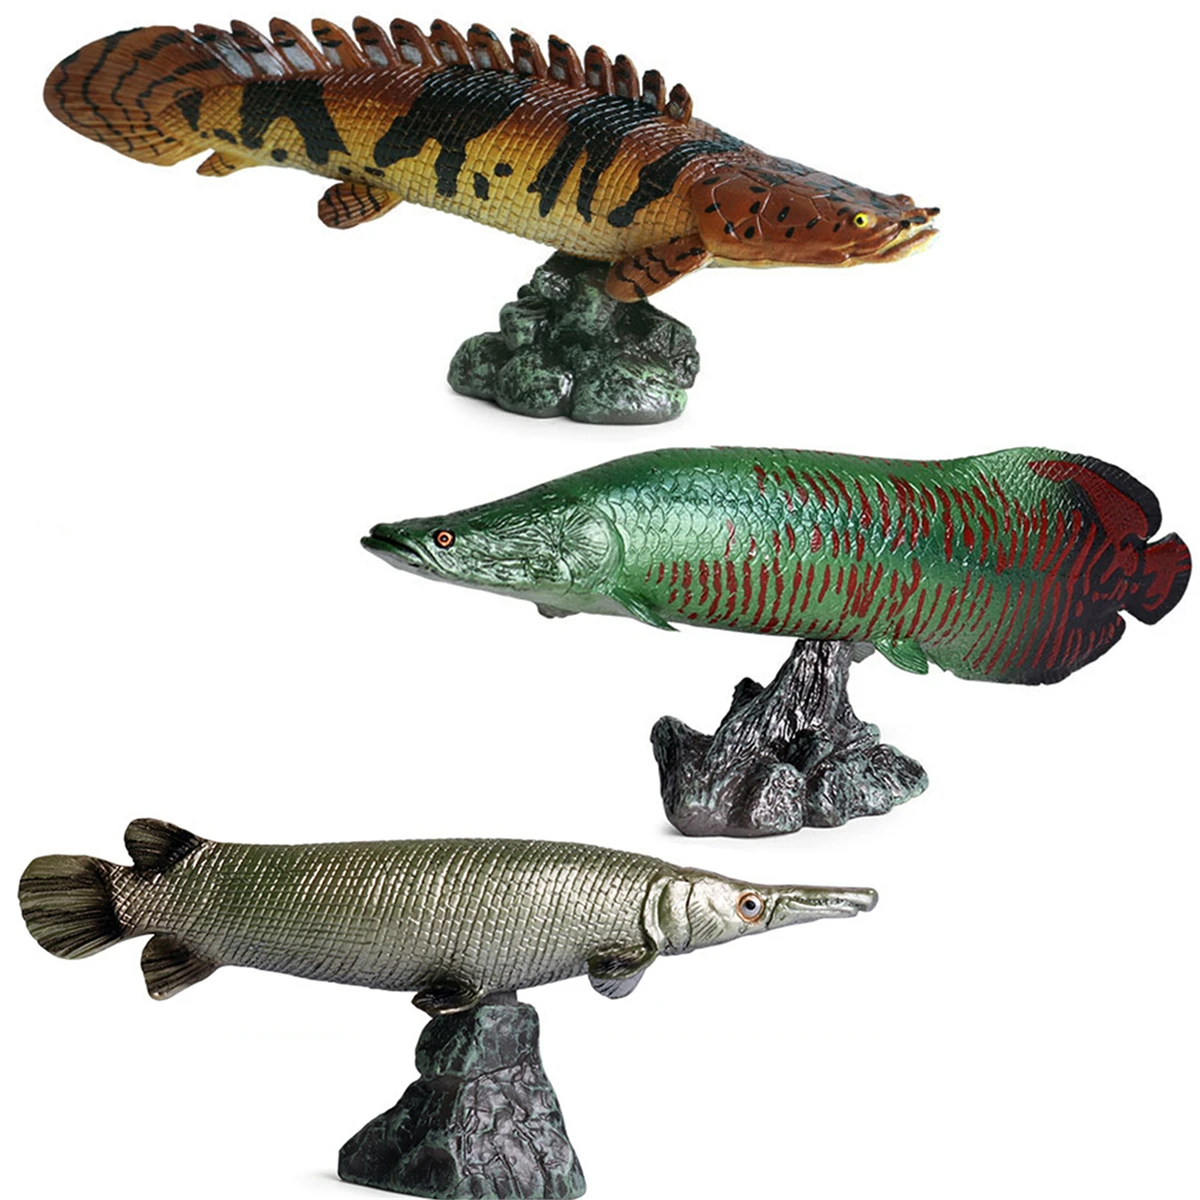 Figuras de animales de peces salvajes de 3 piezas, polpterus delhezi Arapaima, gigas, piraruccu, Cocodrilo, Gar, Atractosteus, espátula, modelo educativo, juguete